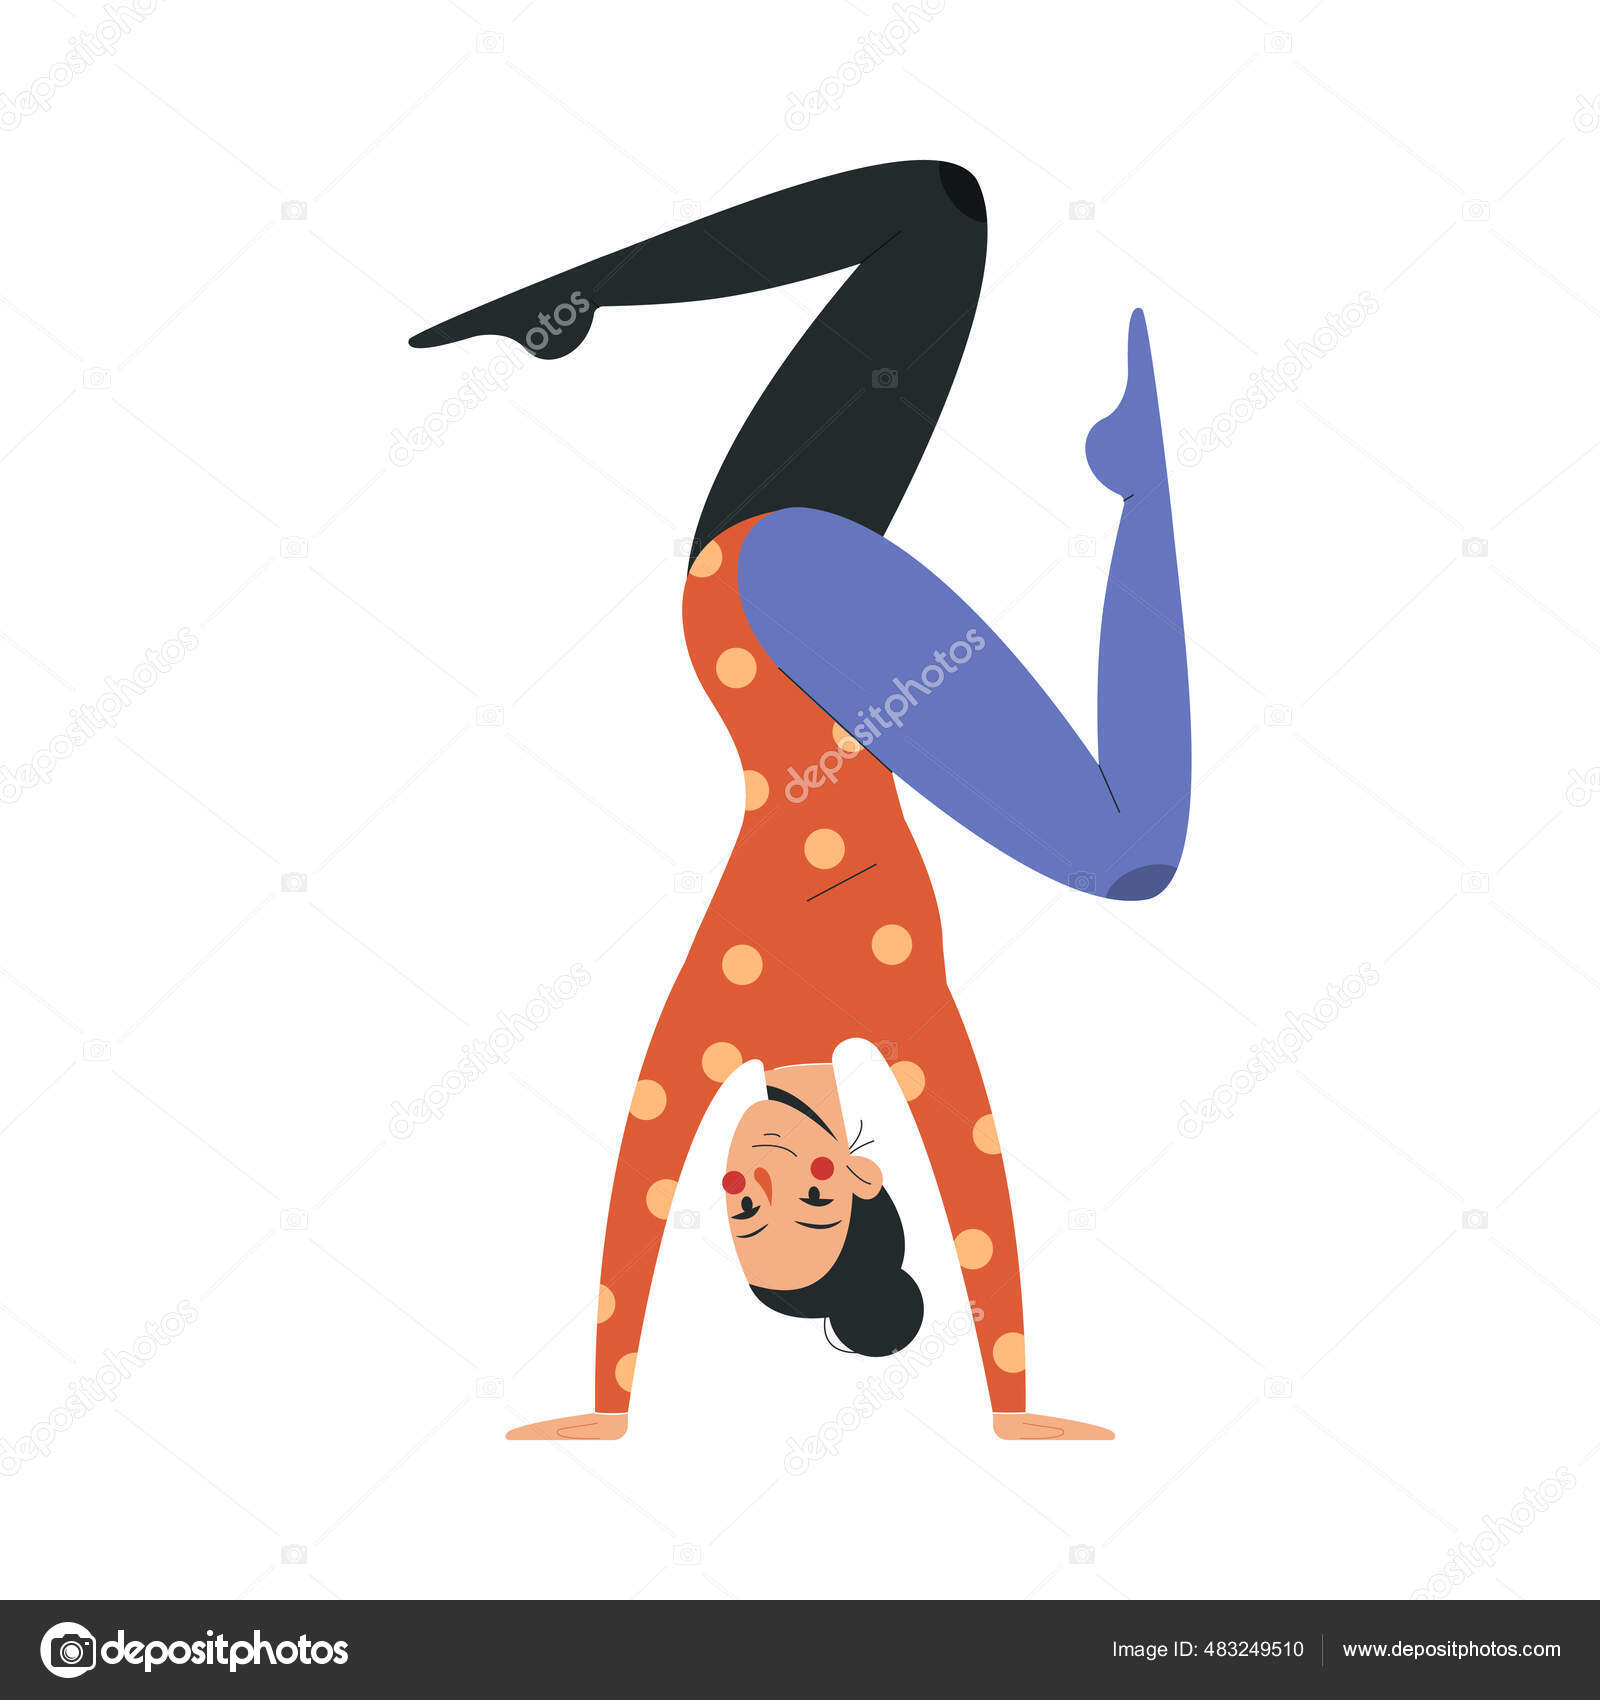 Desenho de Grávida praticando ioga pintado e colorido por Usuário